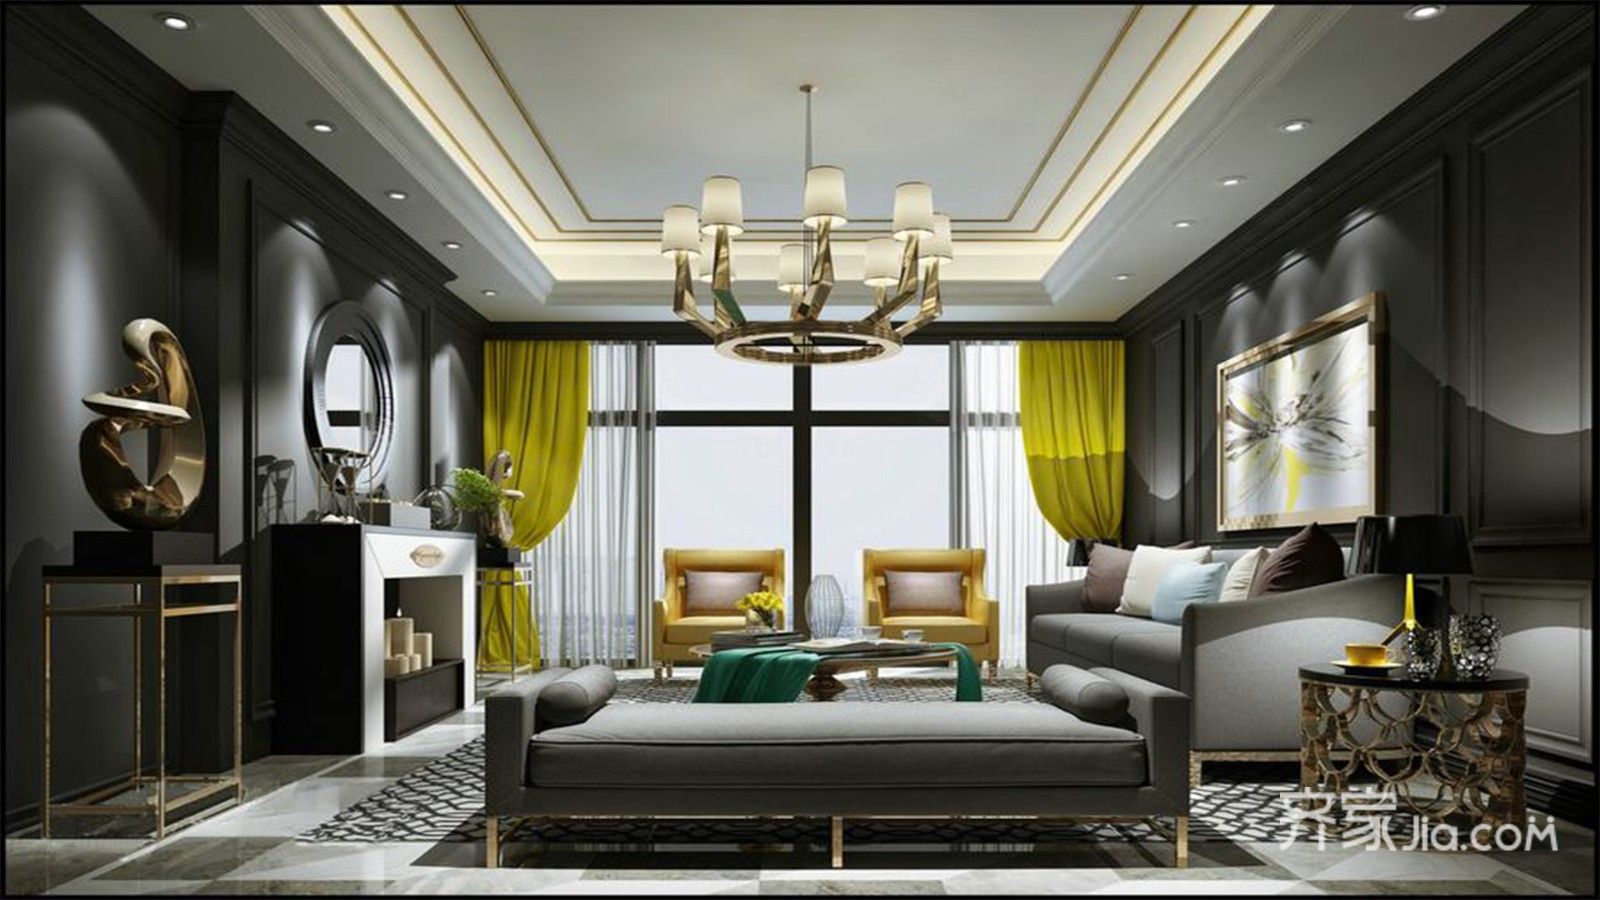 20万以上装修,二居室装修,80平米装修,客厅,现代简约风格,沙发背景墙,沙发,灰色